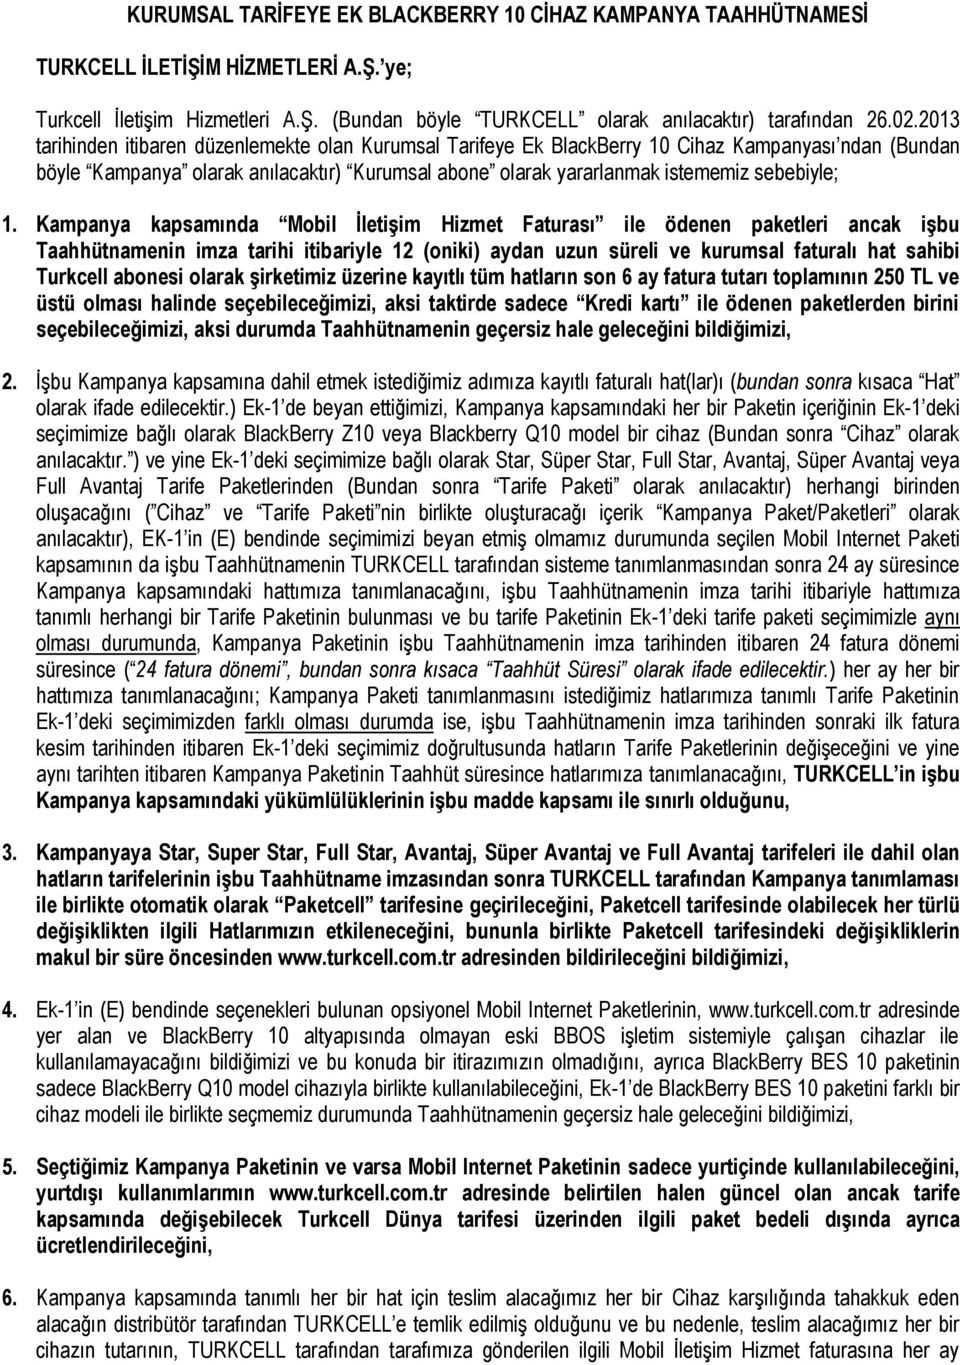 Kampanya kapsamında Mobil İletişim Hizmet Faturası ile ödenen paketleri ancak işbu Taahhütnamenin imza tarihi itibariyle 12 (oniki) aydan uzun süreli ve kurumsal faturalı hat sahibi Turkcell abonesi